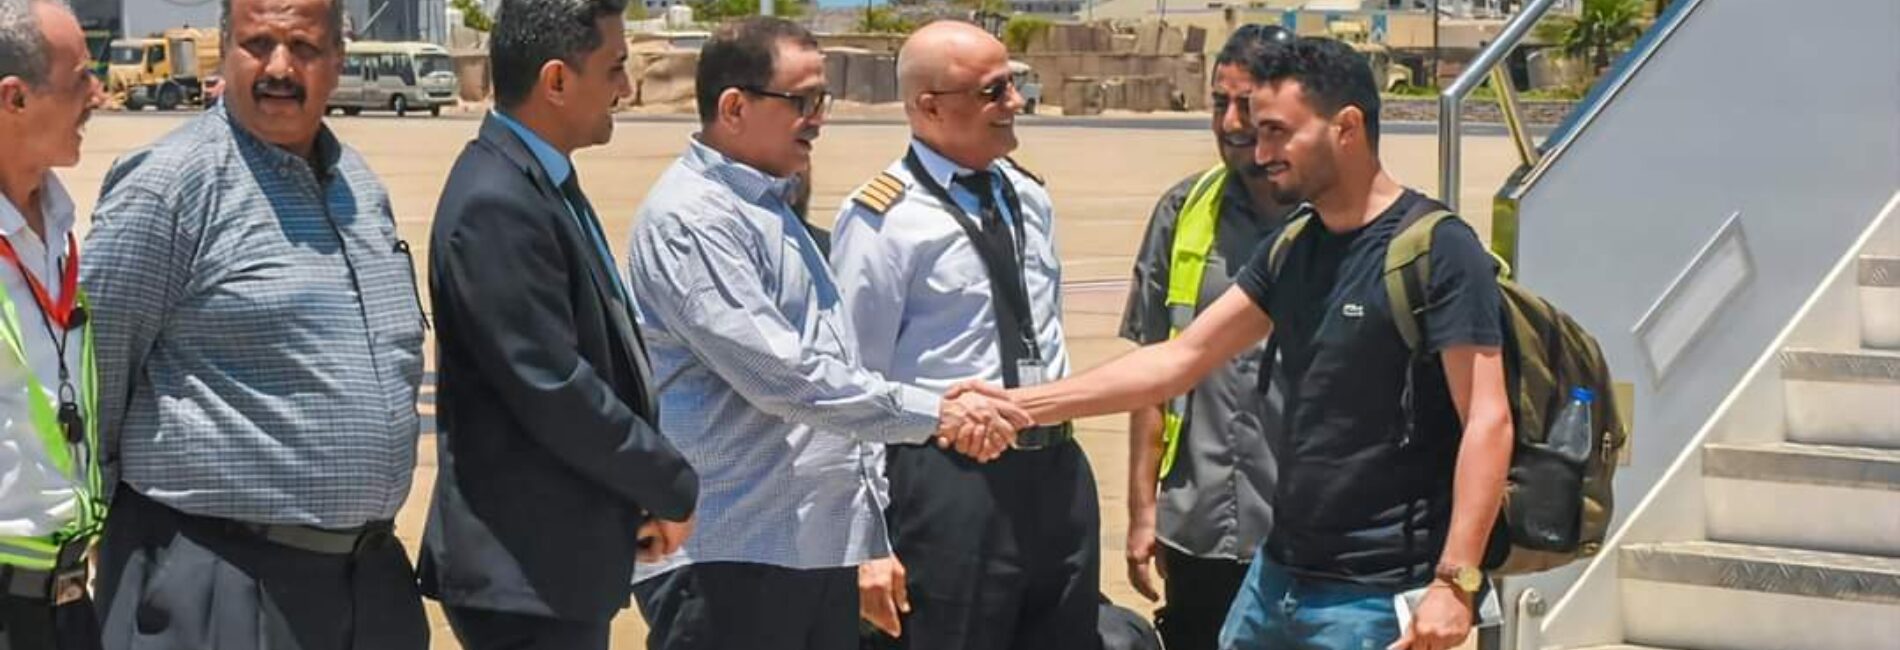 رئيس مجلس إدارة "اليمنية" الكابتن ناصر محمود يستقبل دفعة جديدة من العائدين من بورتسودان